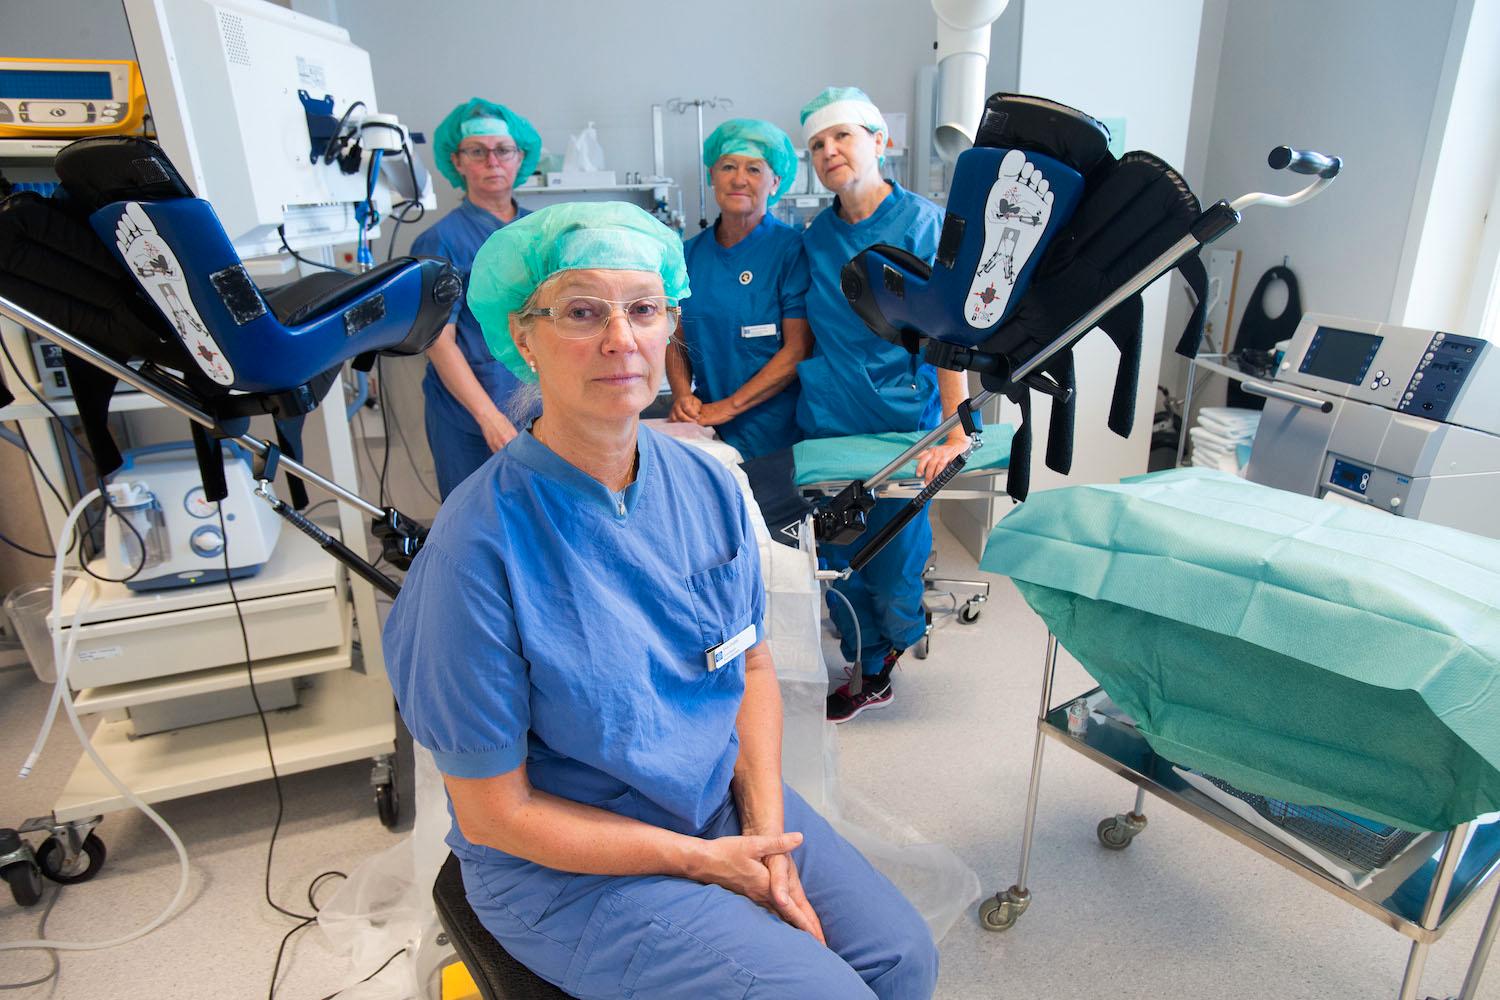 Eva Uustal tillsammans med sitt operationsteam på Linköpings universitetssjukhus. Uustal är även sakkunnig i SBU:s rapport och svåra förlossningsskador.